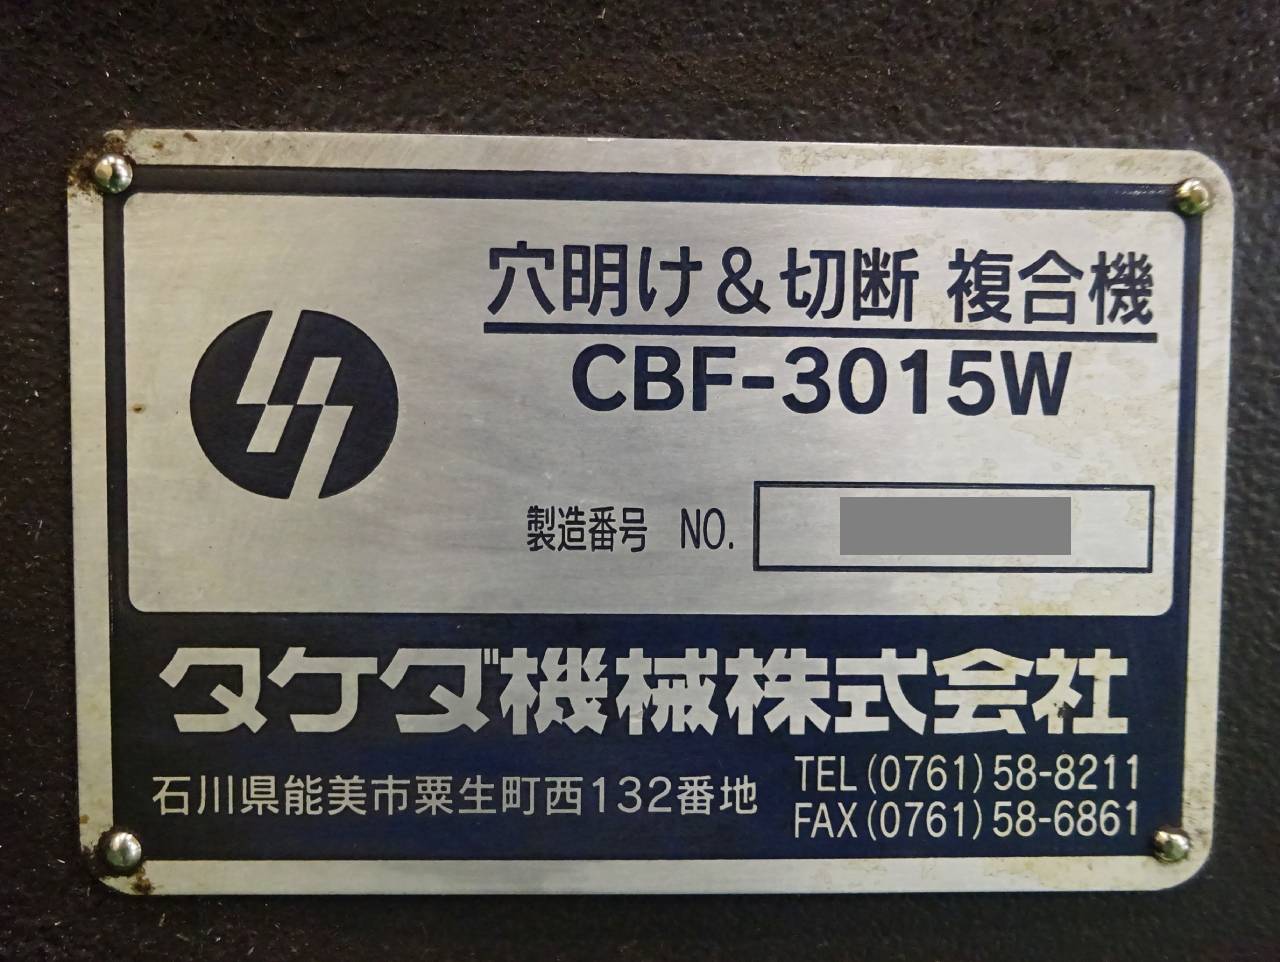 CBF-3015Wの銘板